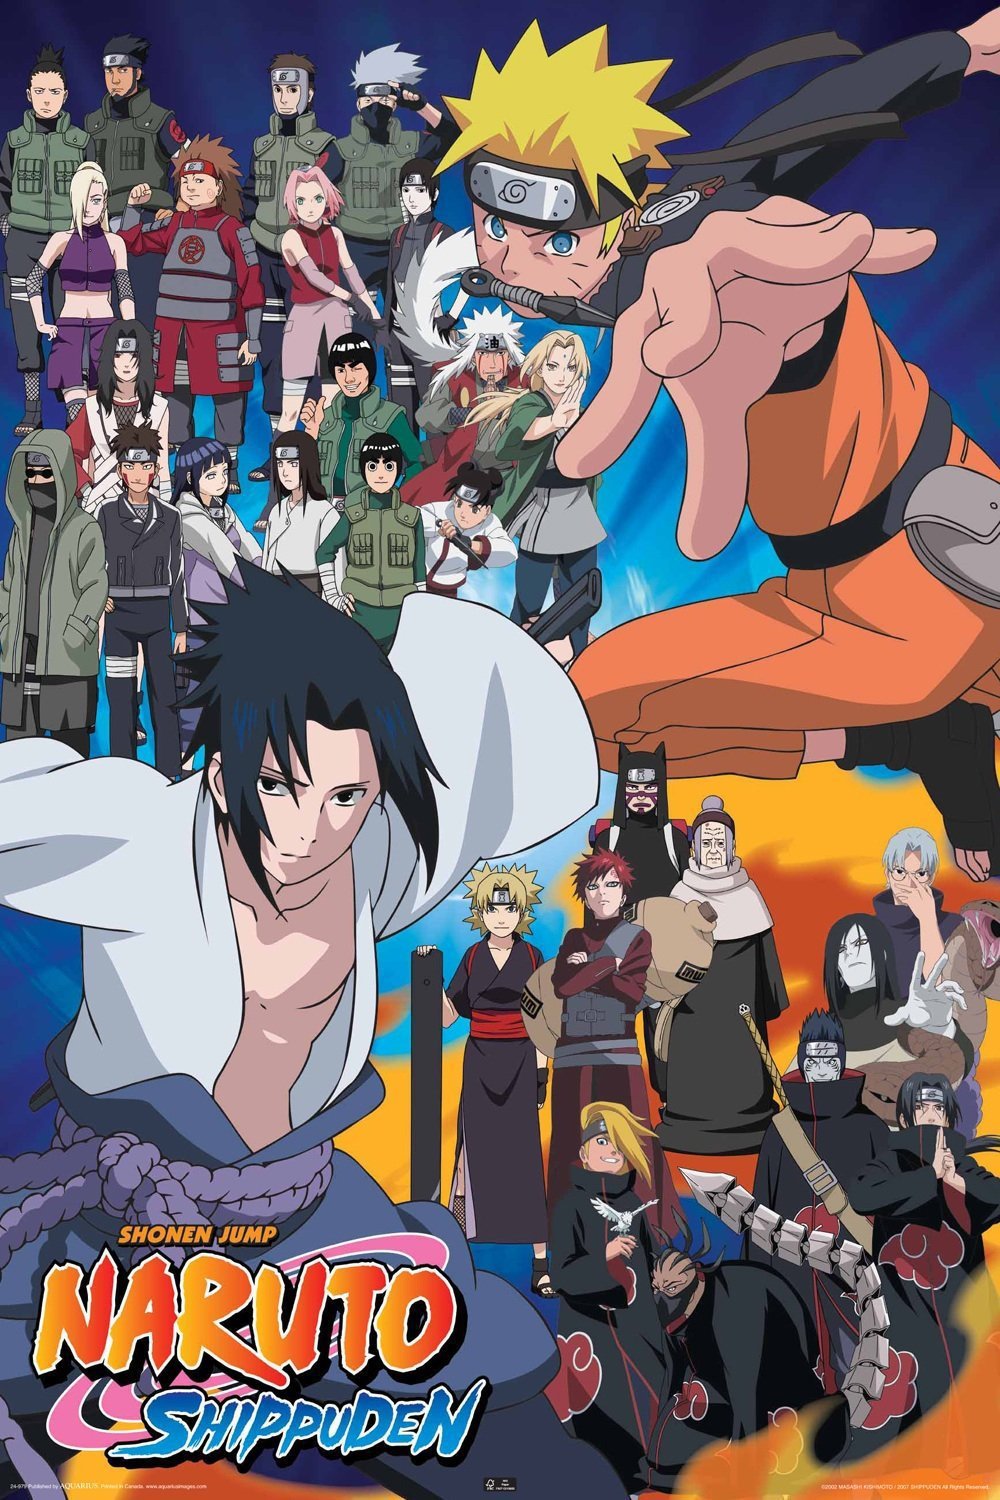 Anime: ¿Cuándo continua Naruto Shippuden en Netflix?